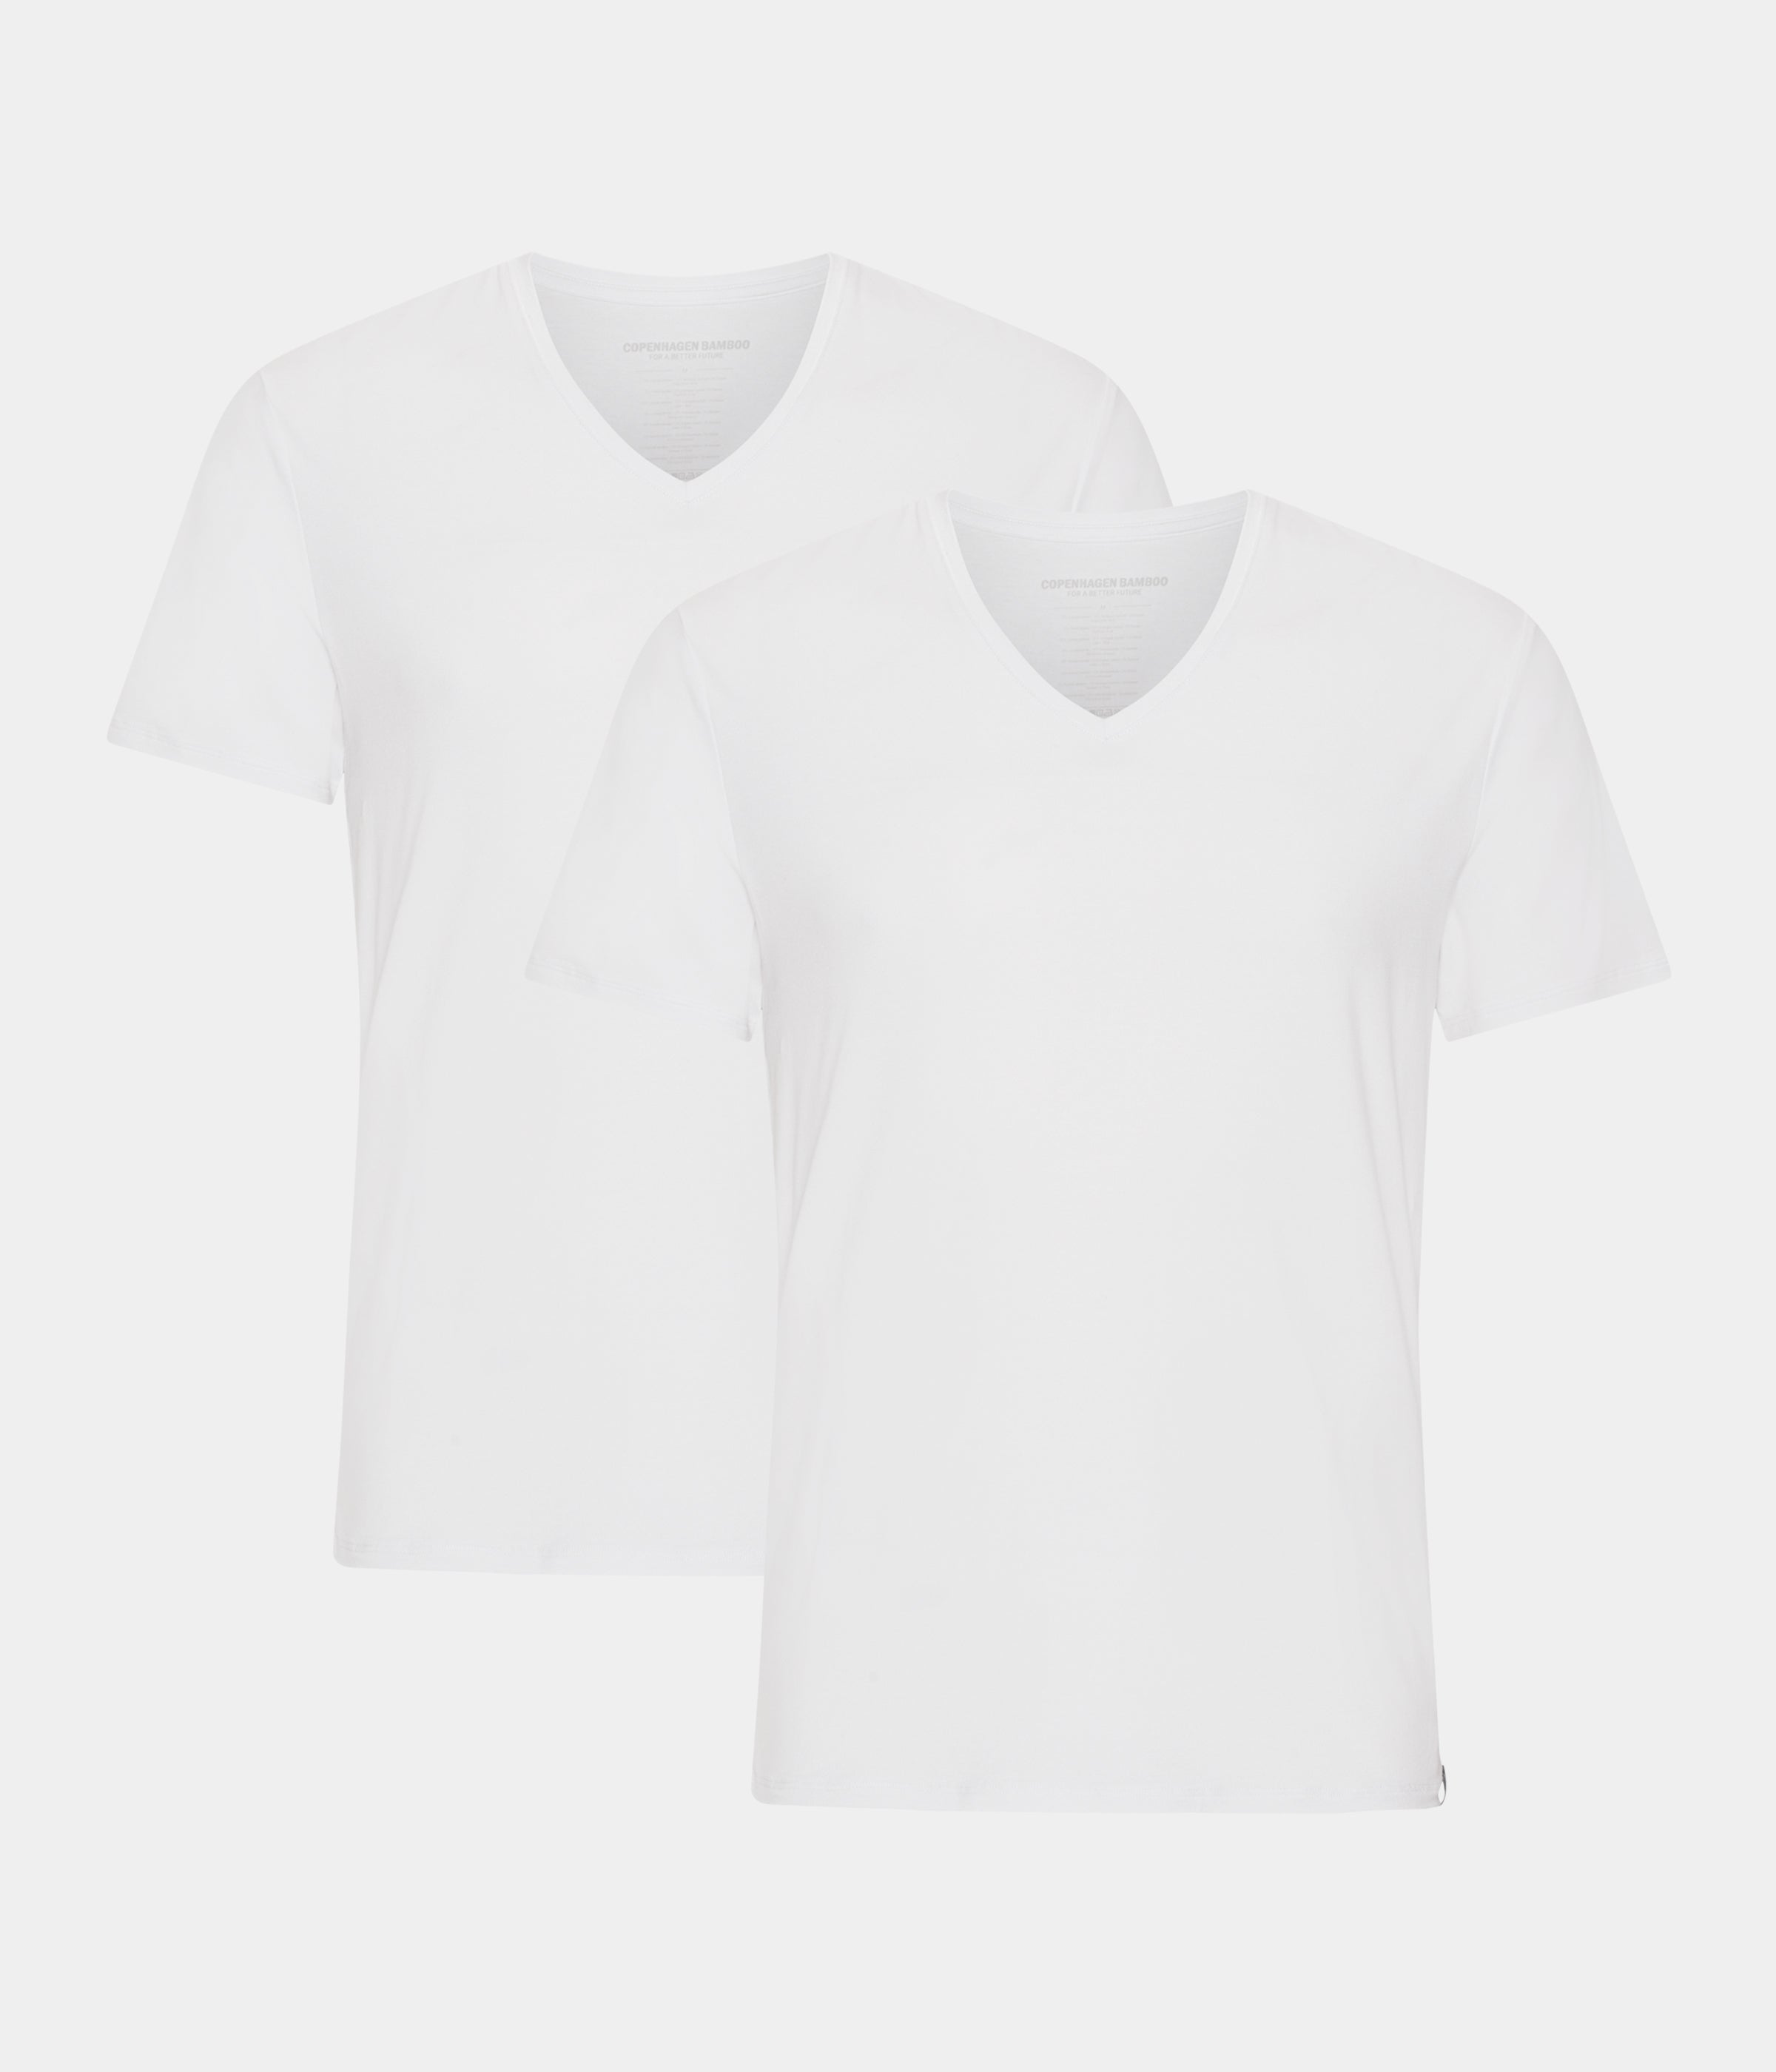 Billede af 2 stk hvide bambus slim fit T-shirt med v-hals til mænd fra Copenhagen Bamboo, S